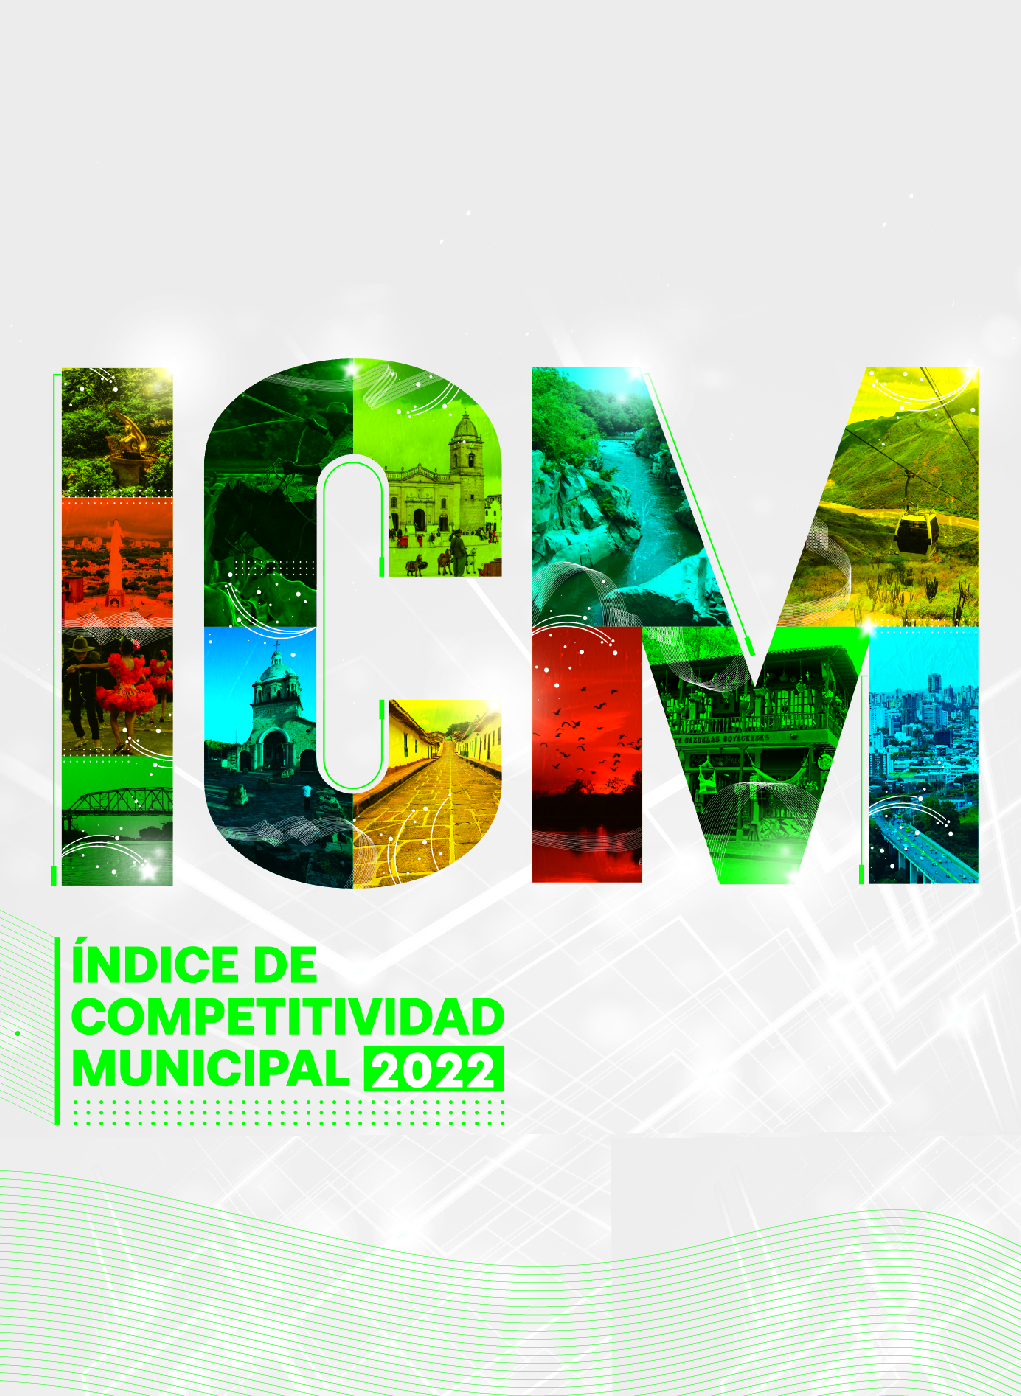 Índice de Competitividad Municipal (ICM) 2022